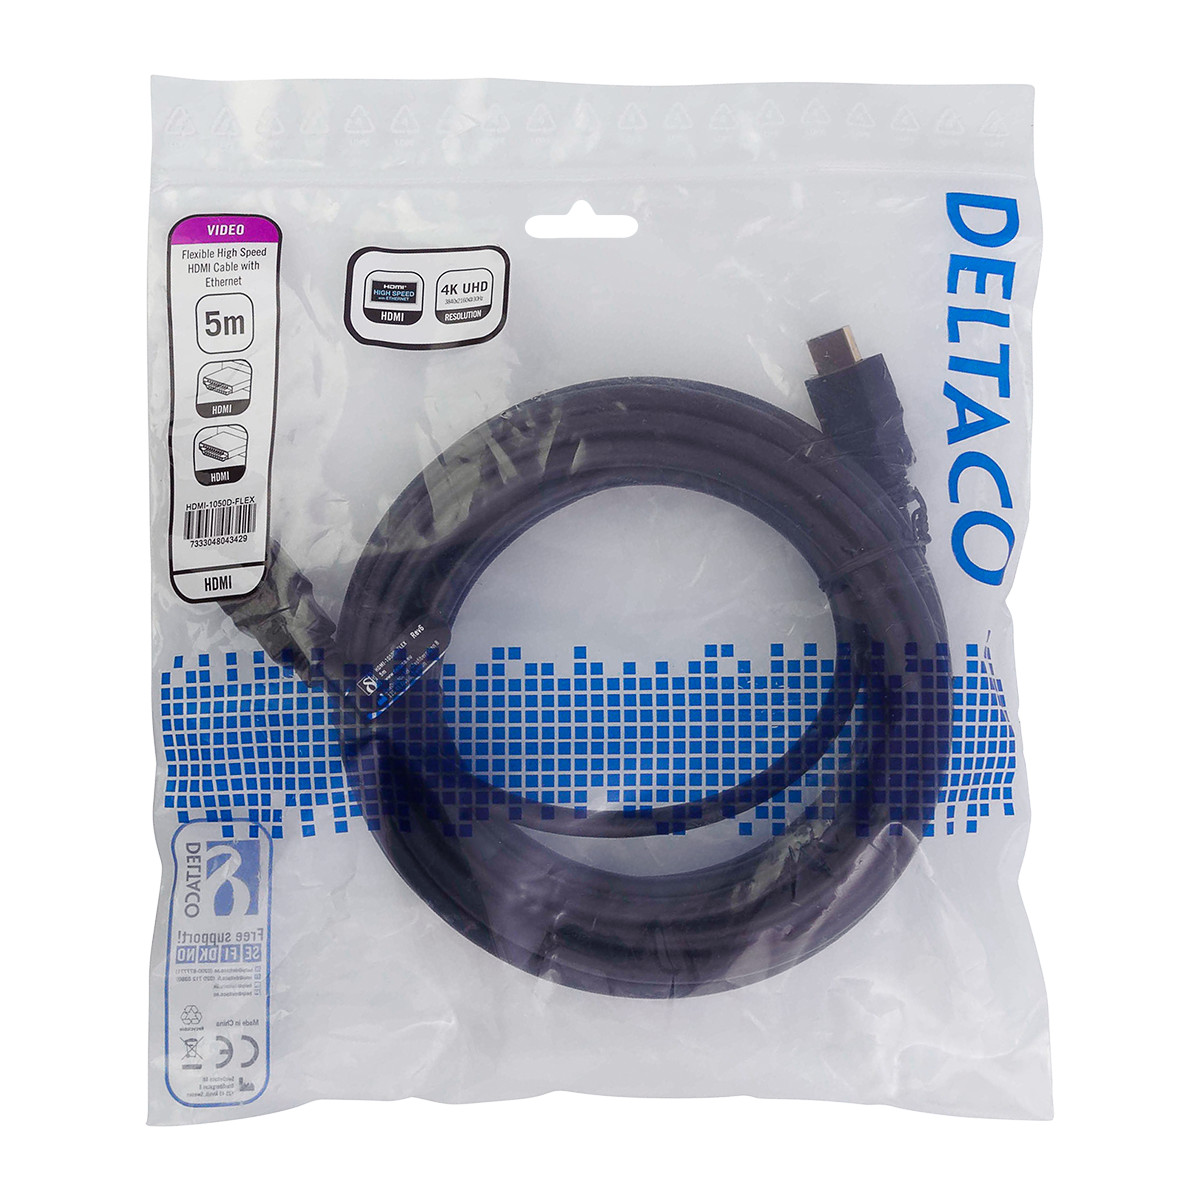 DELTACO flexibel HDMI-kabel, 4K UltraHD i 30Hz, 5m, svart